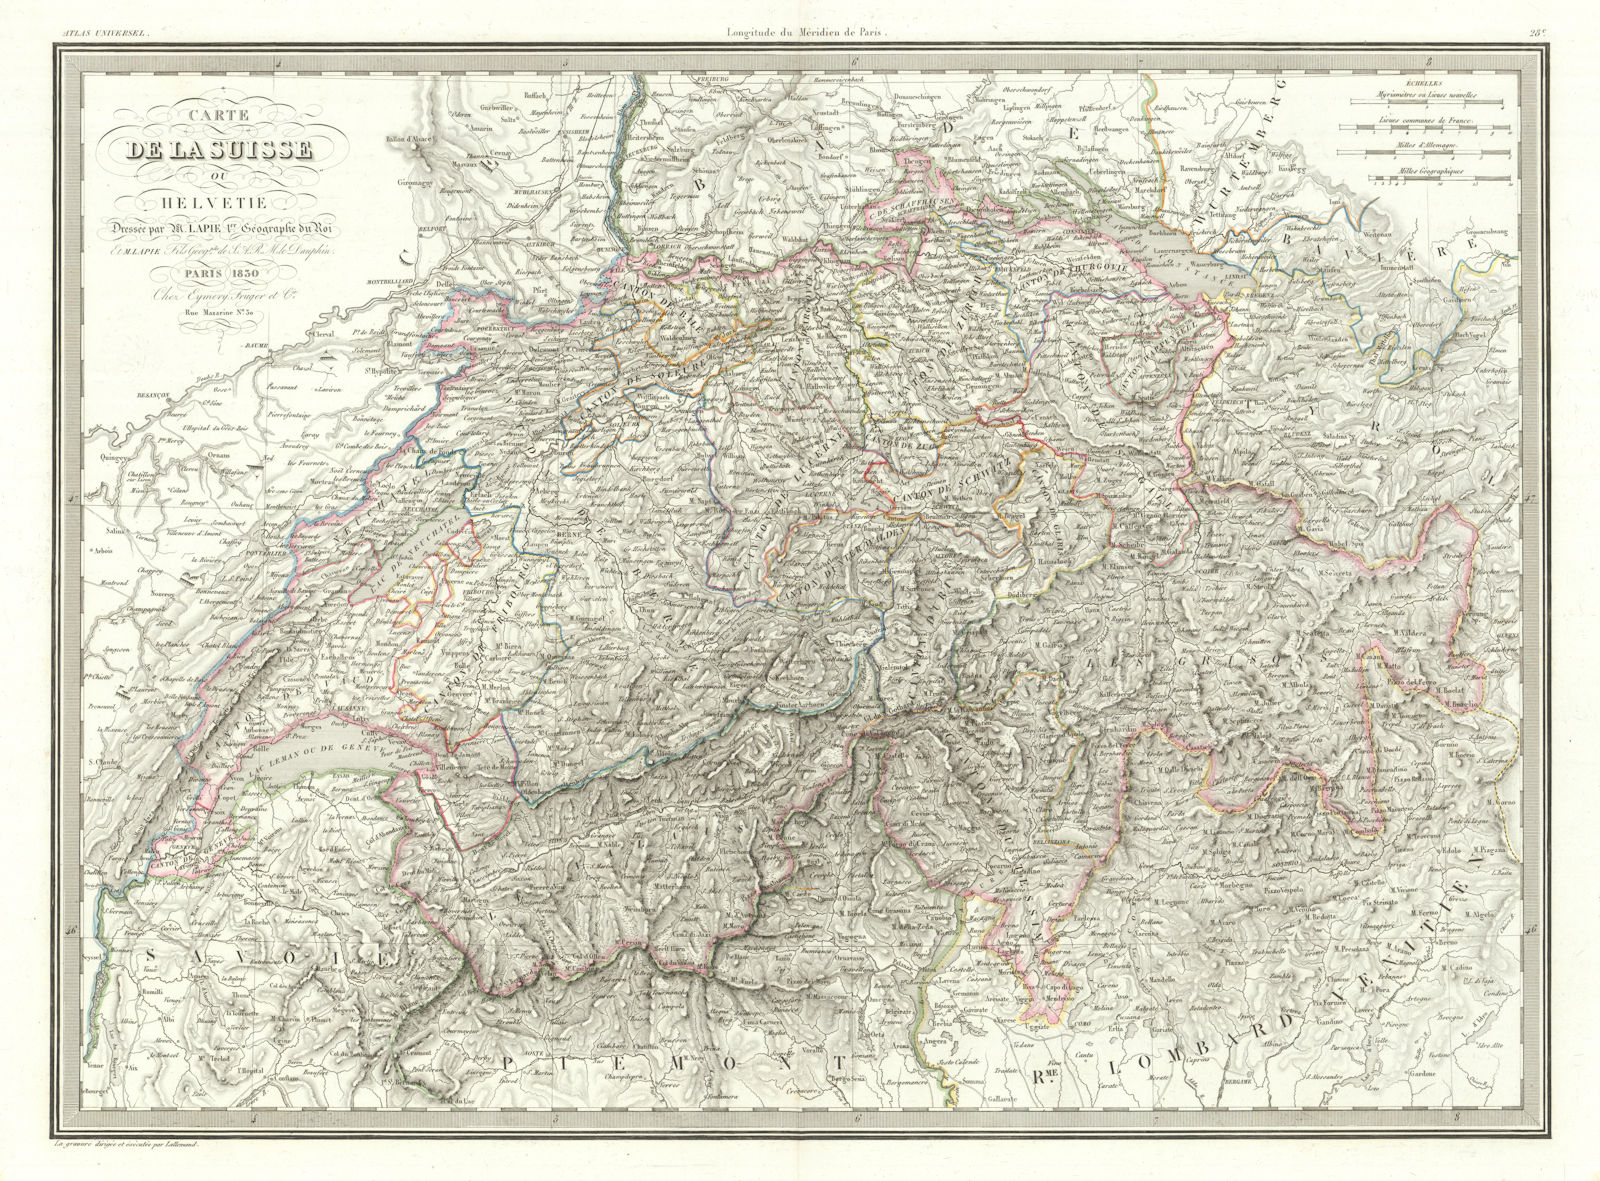 Carte de la Suisse ou Helvétie. Switzerland or Helvetia. LAPIE 1830 old map